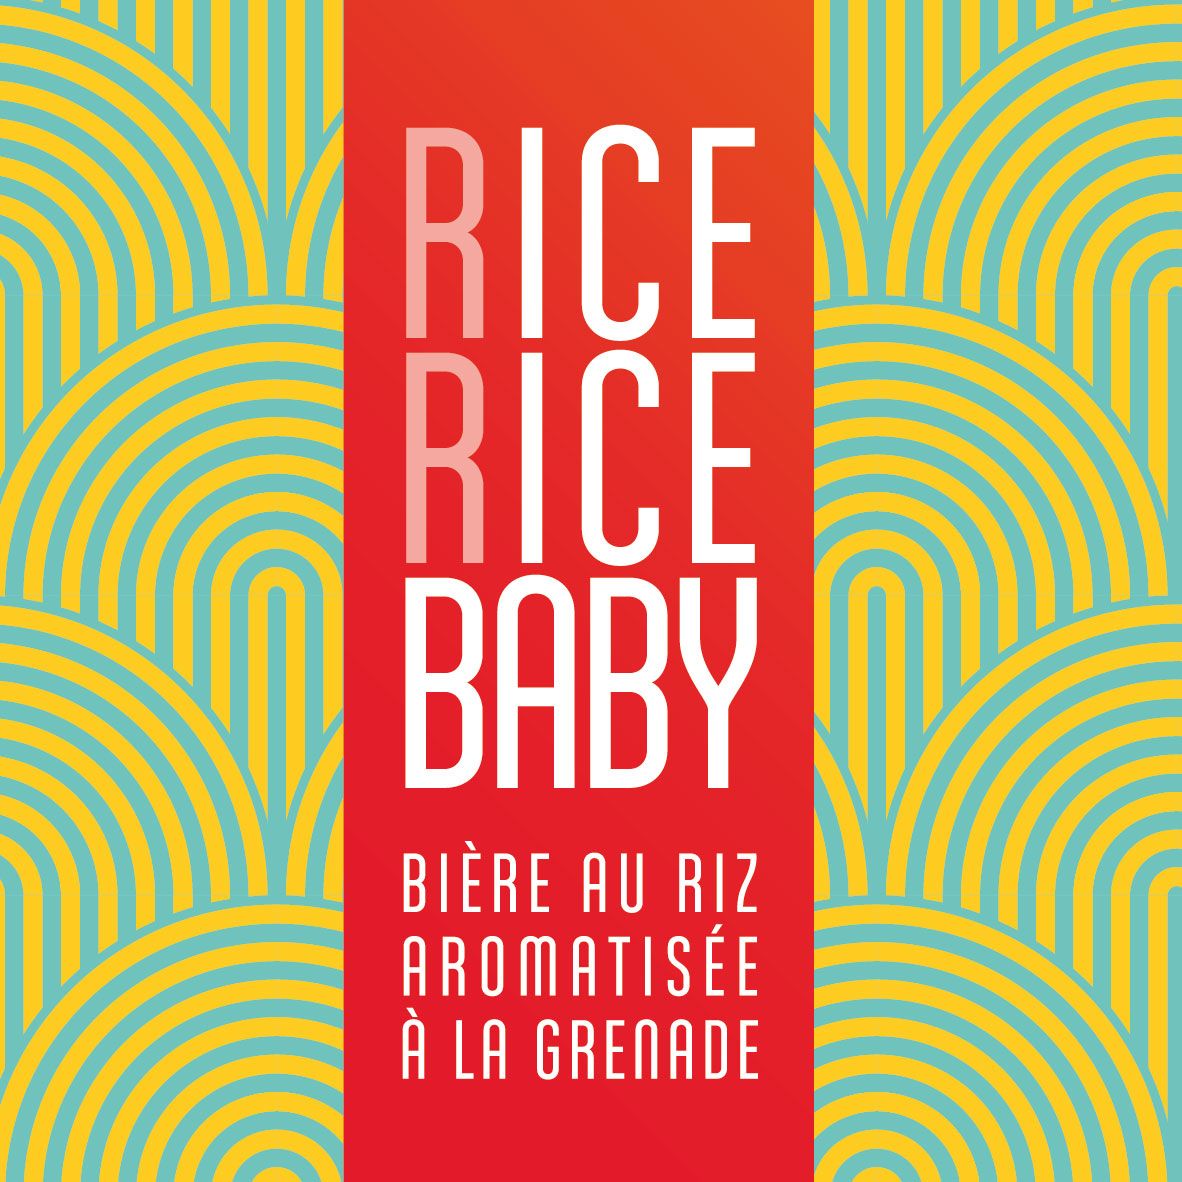 Rice Rice Baby bière au riz brassée par La Brasserie Bleue